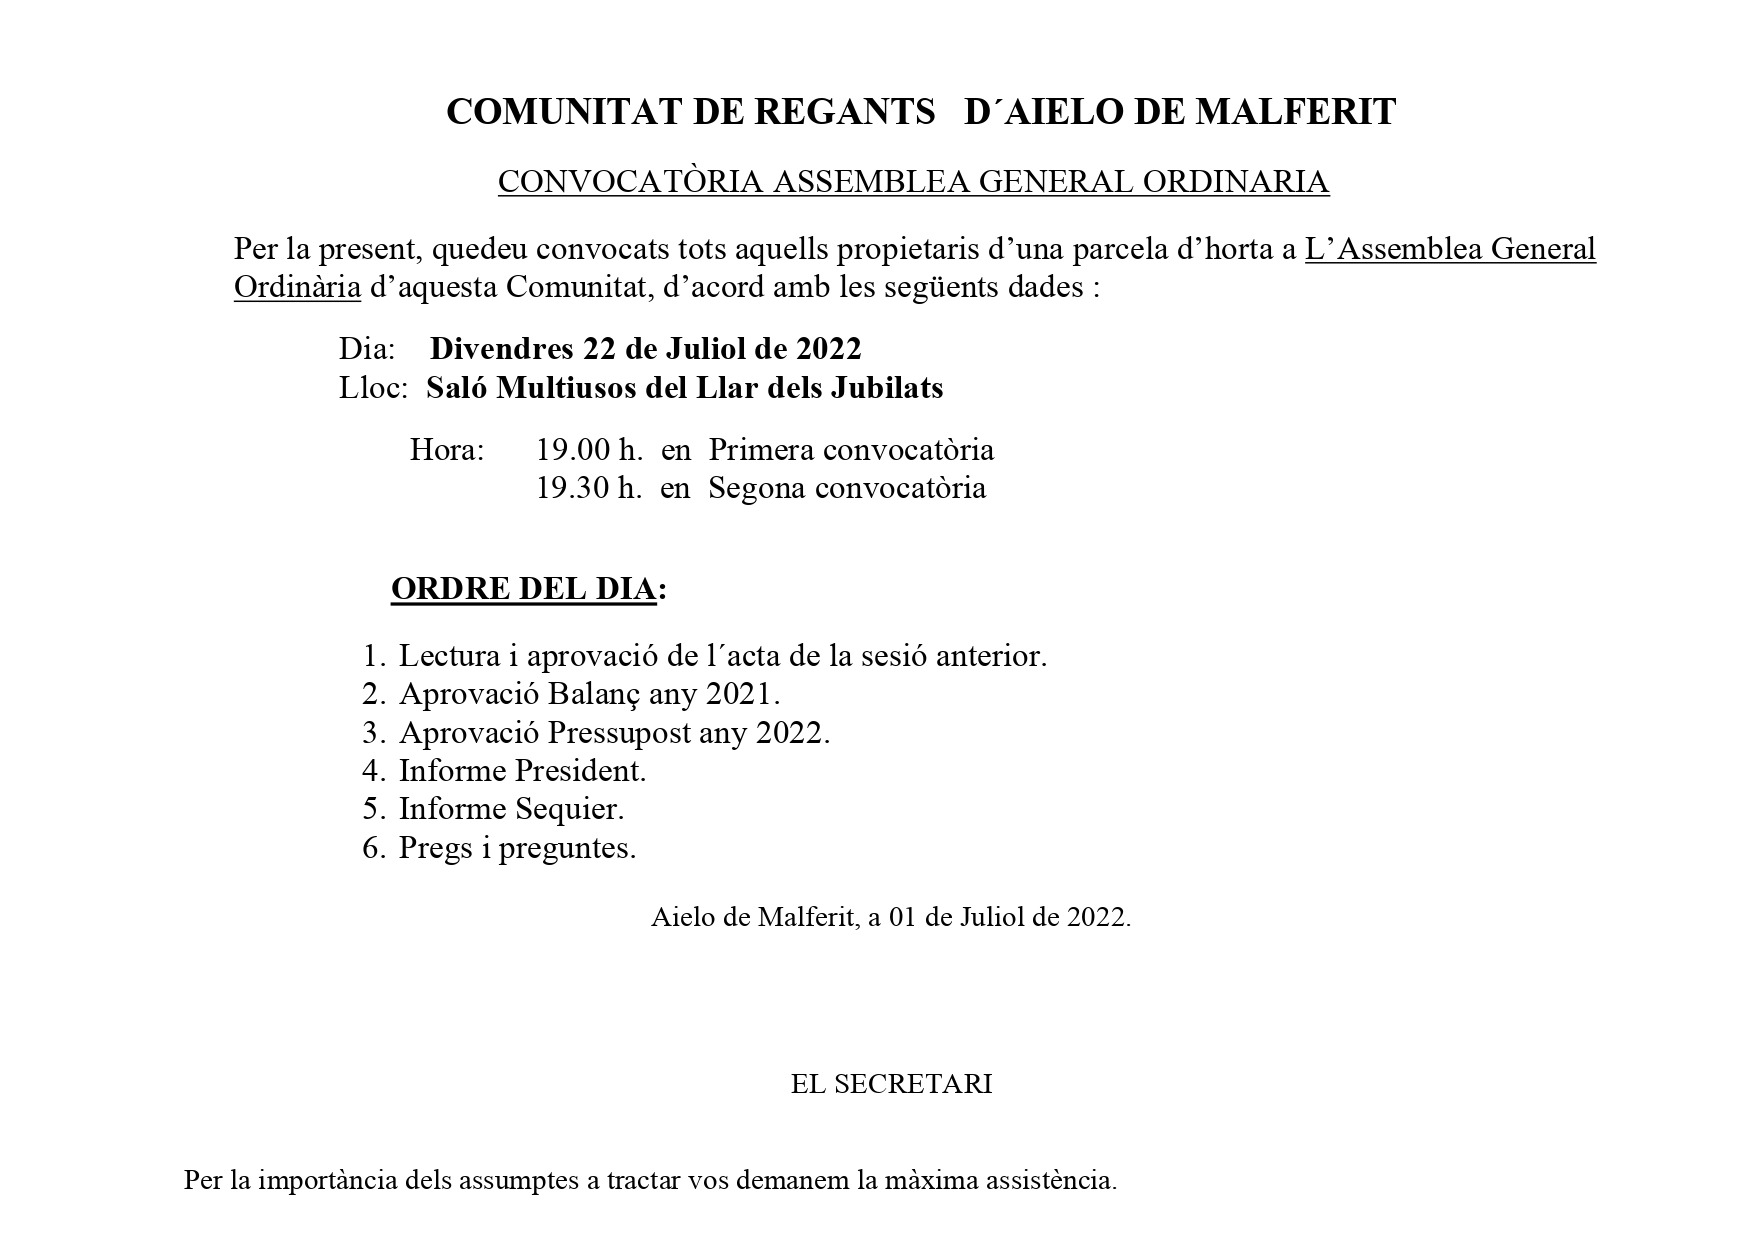 COMUNITAT DE REGRANTS D'AIELO DE MALFERIT